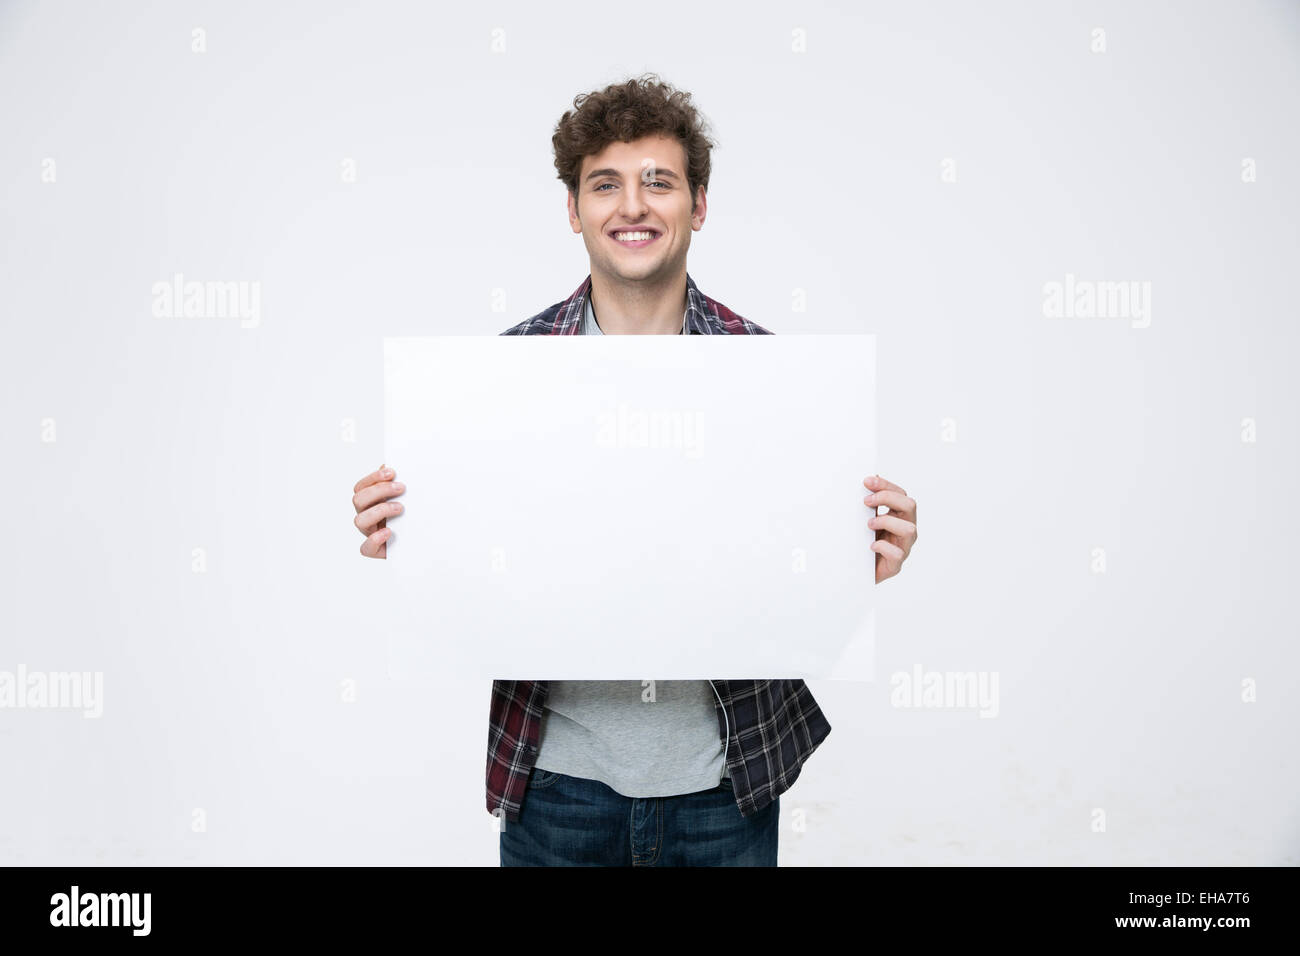 Homme heureux avec les cheveux bouclés holding blank billboard Banque D'Images